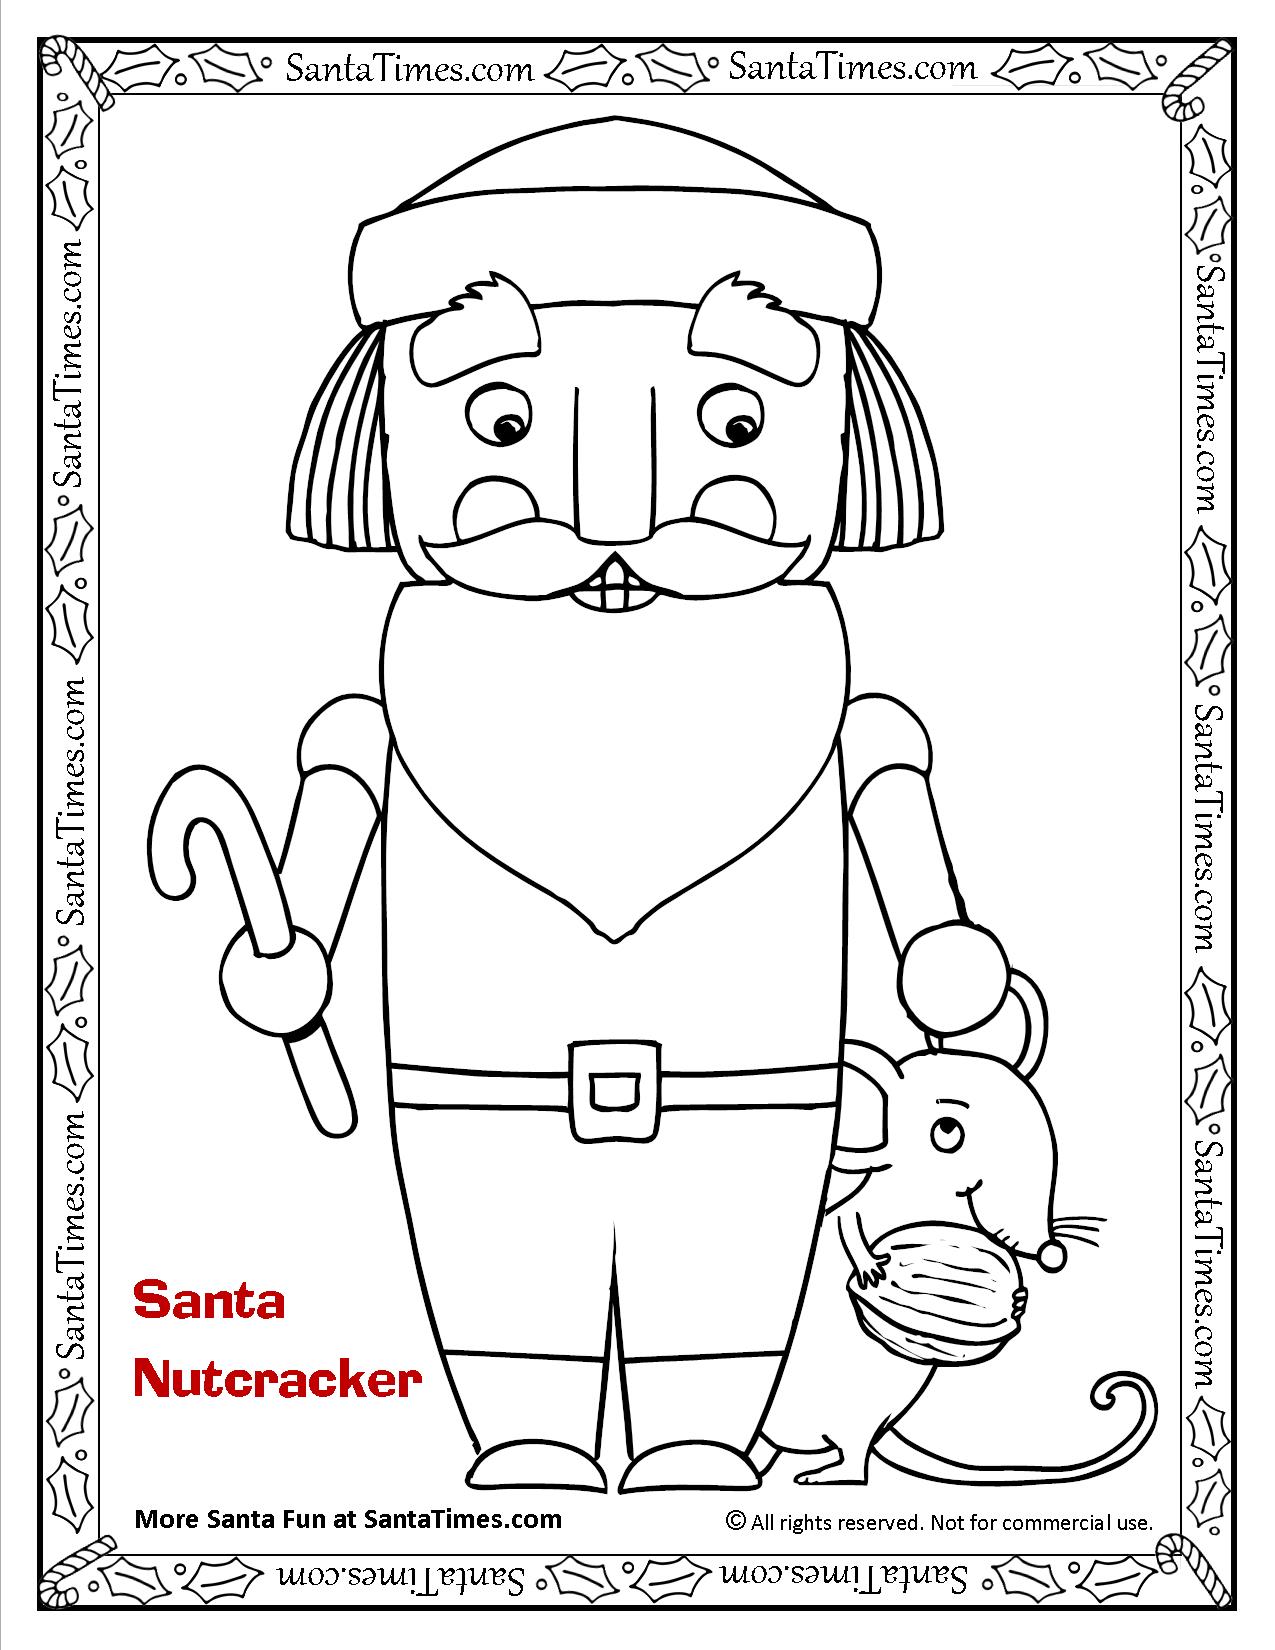 Nutcracker santa printable coloring page